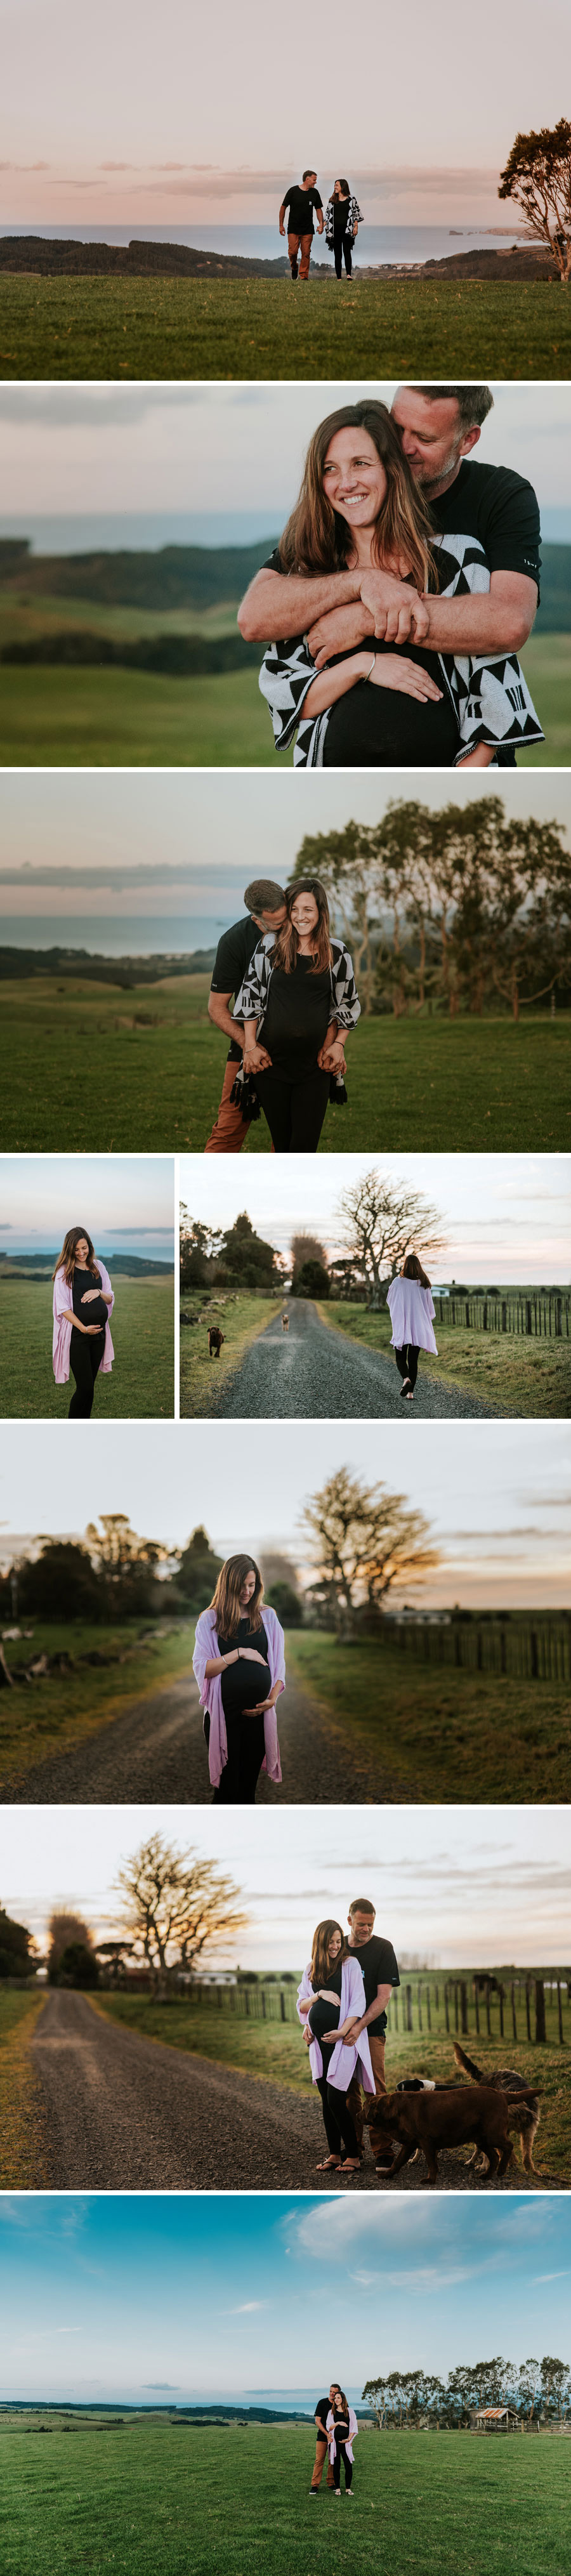 New Zealand Lifestyle maternity photographer Jess Burges